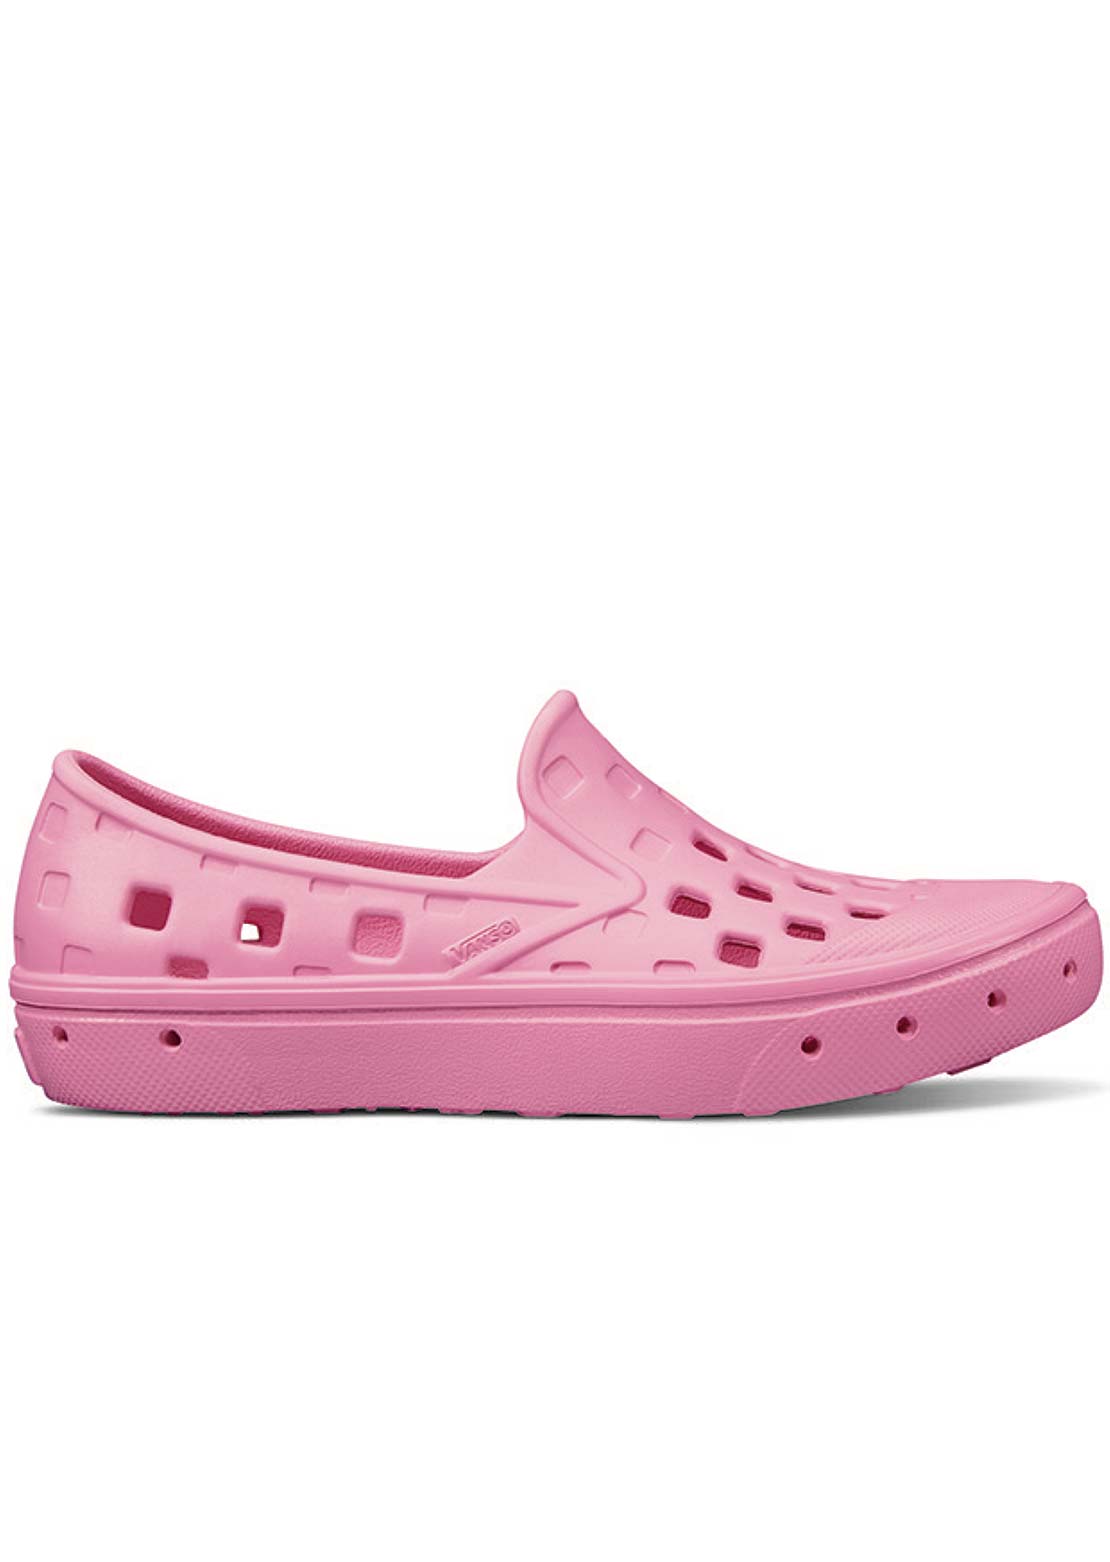 Vans Junior Slip-On Trek Shoes Begonia